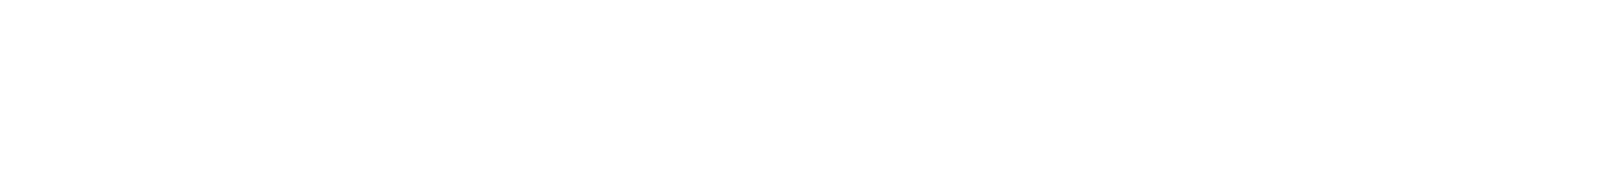 Anthology Intelligent Experiences logo